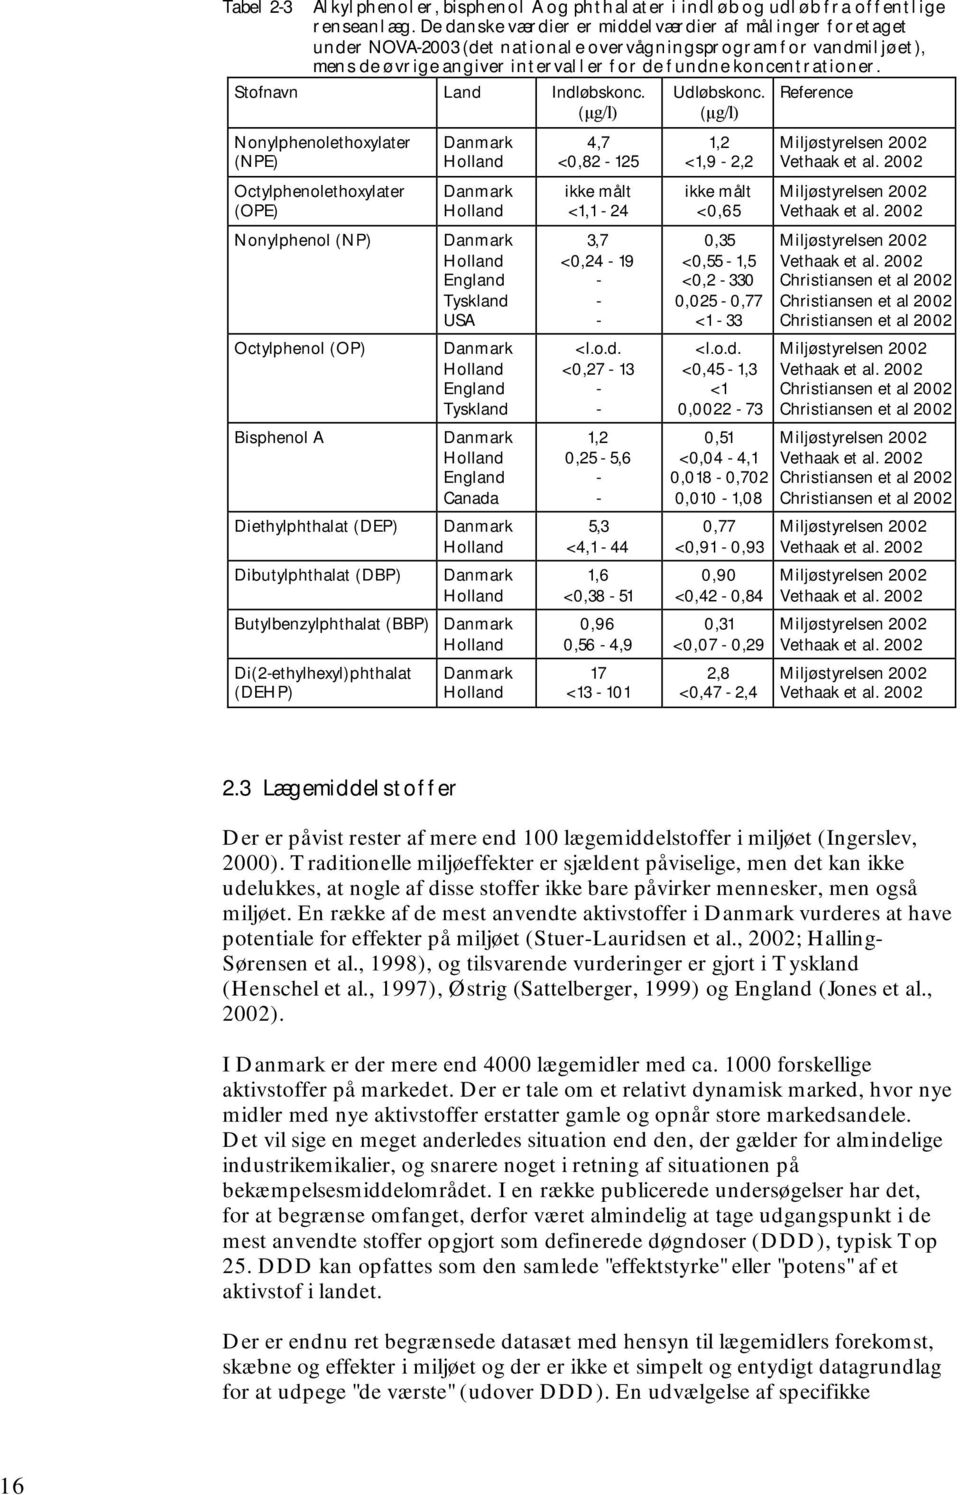 Stofnavn Land Indløbskonc. (µg/l) Udløbskonc. (µg/l) Reference Nonylphenolethoxylater (NPE) Danmark Holland 4,7 <0,82-125 1,2 <1,9-2,2 Miljøstyrelsen 2002 Vethaak et al.